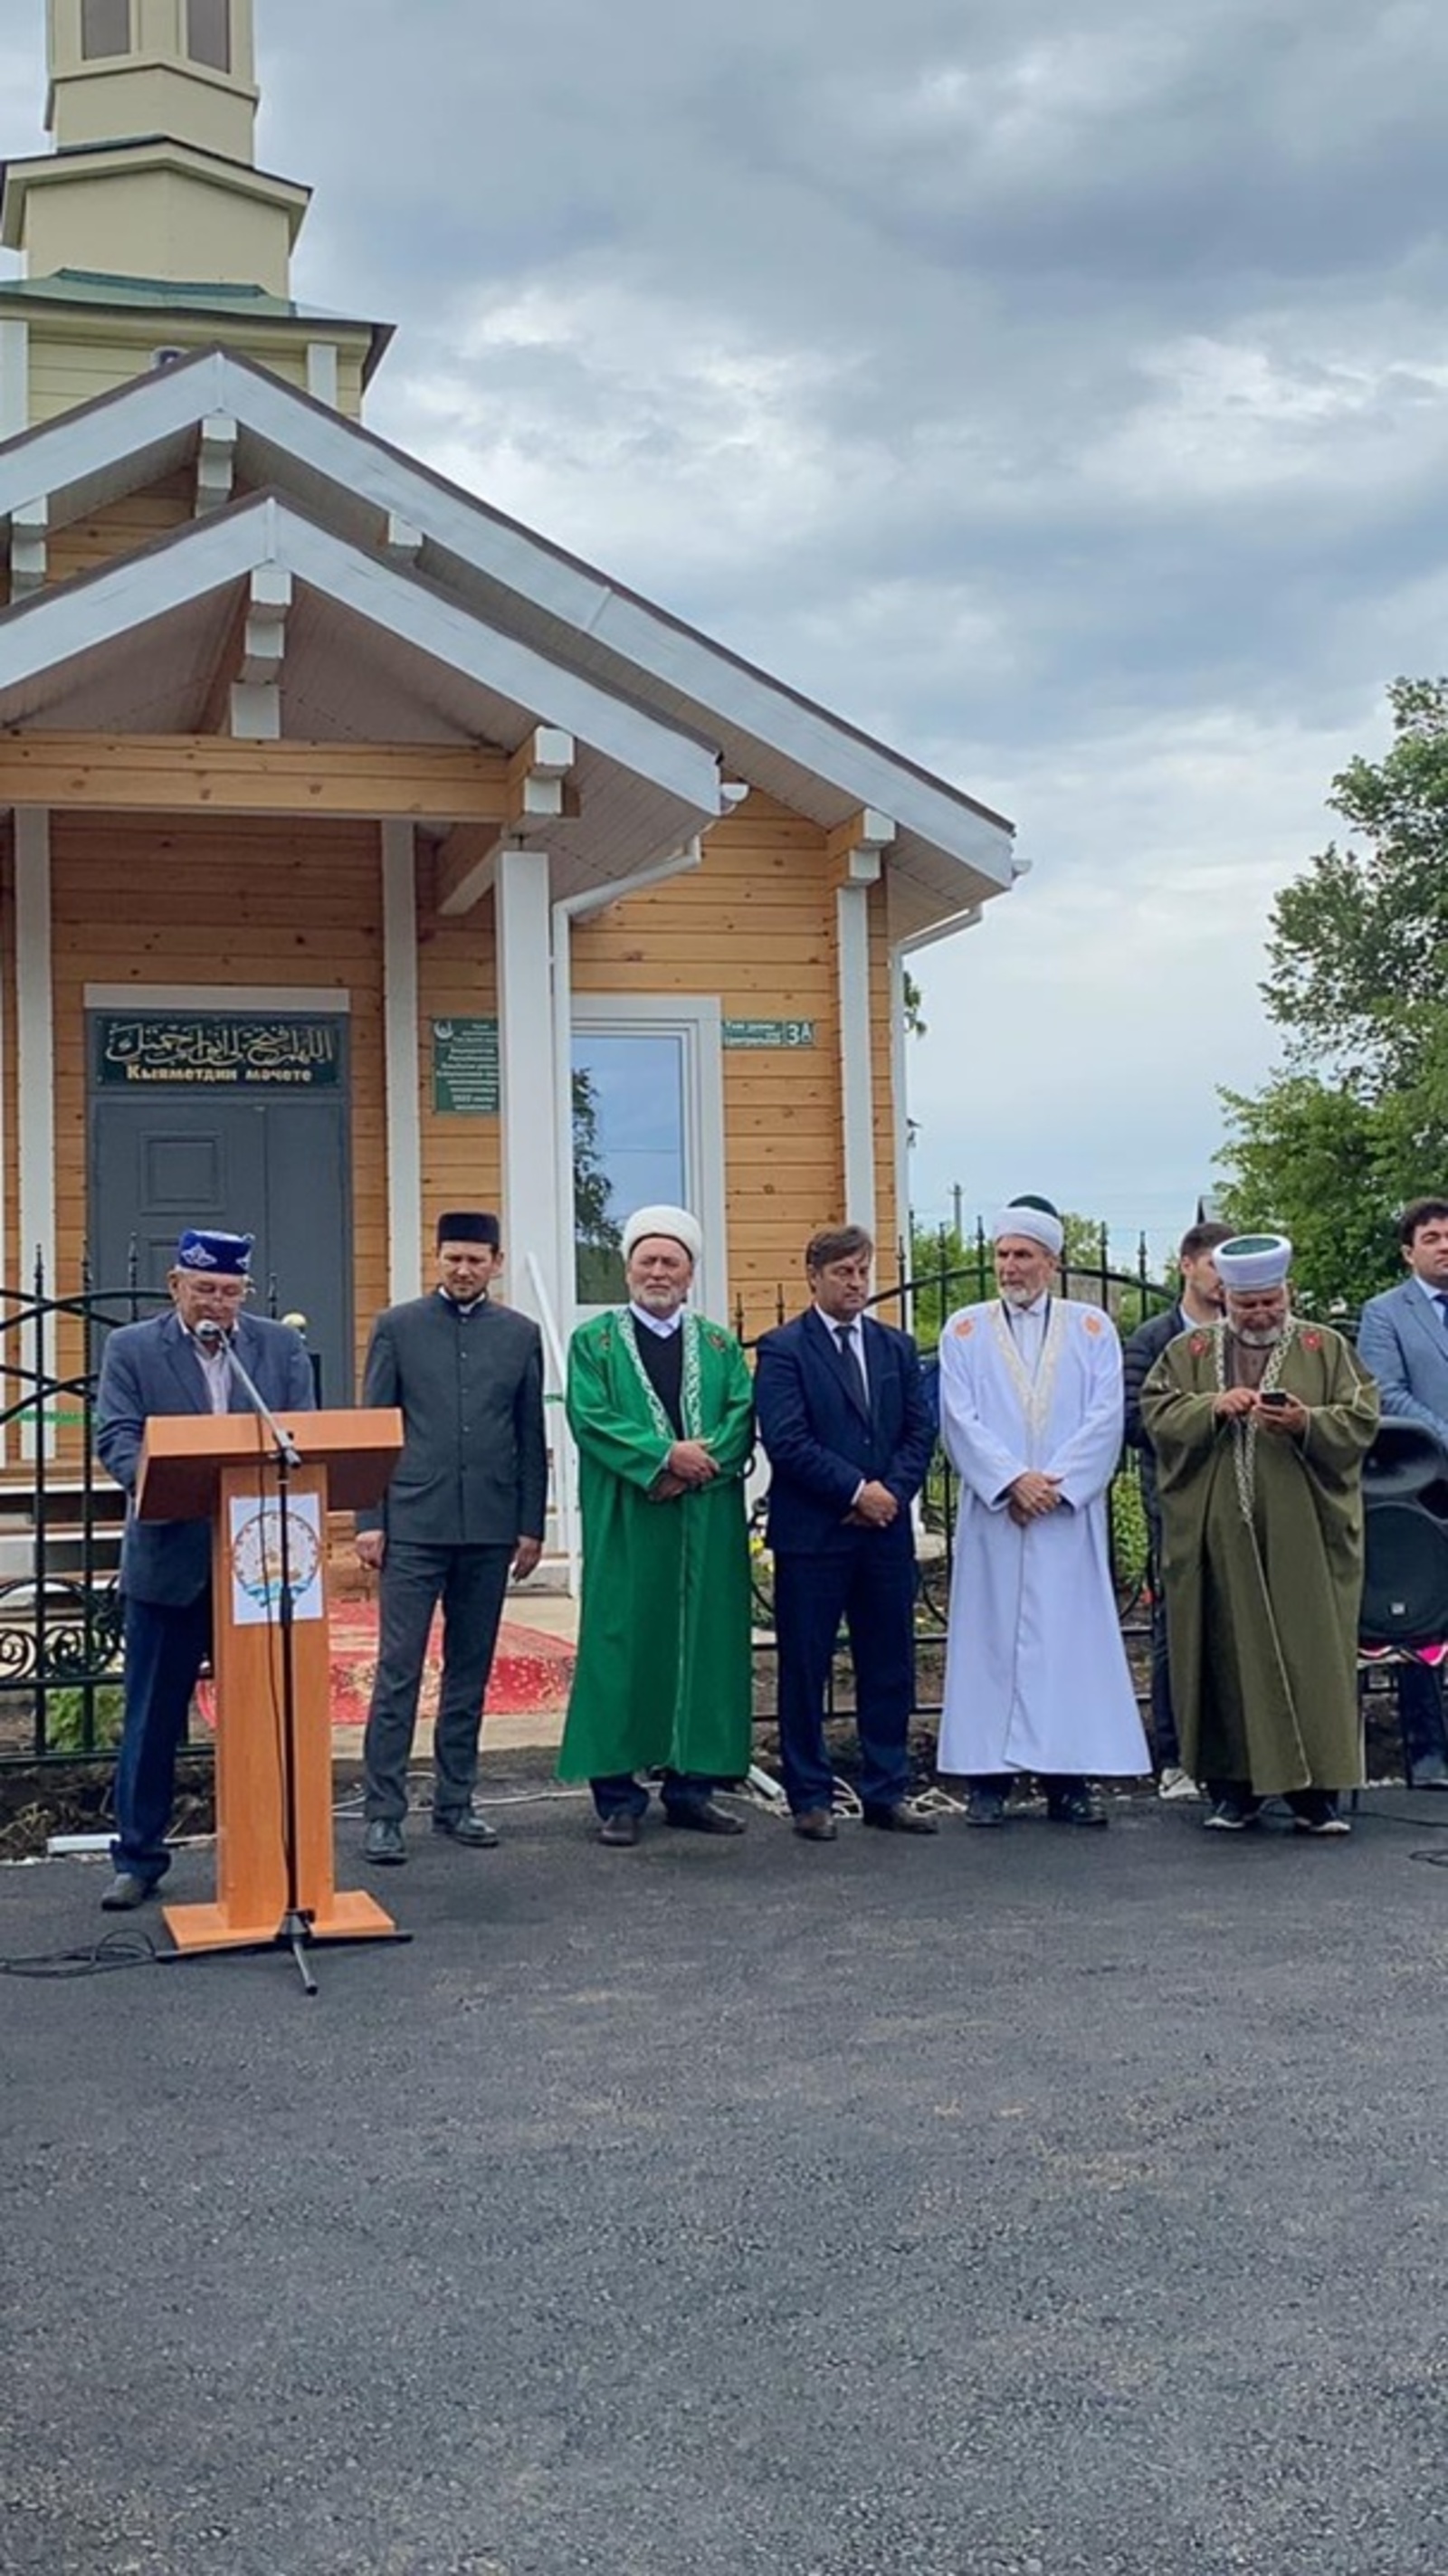 В Елбулактамаке состоялось открытие мечети "Кыяметдин"